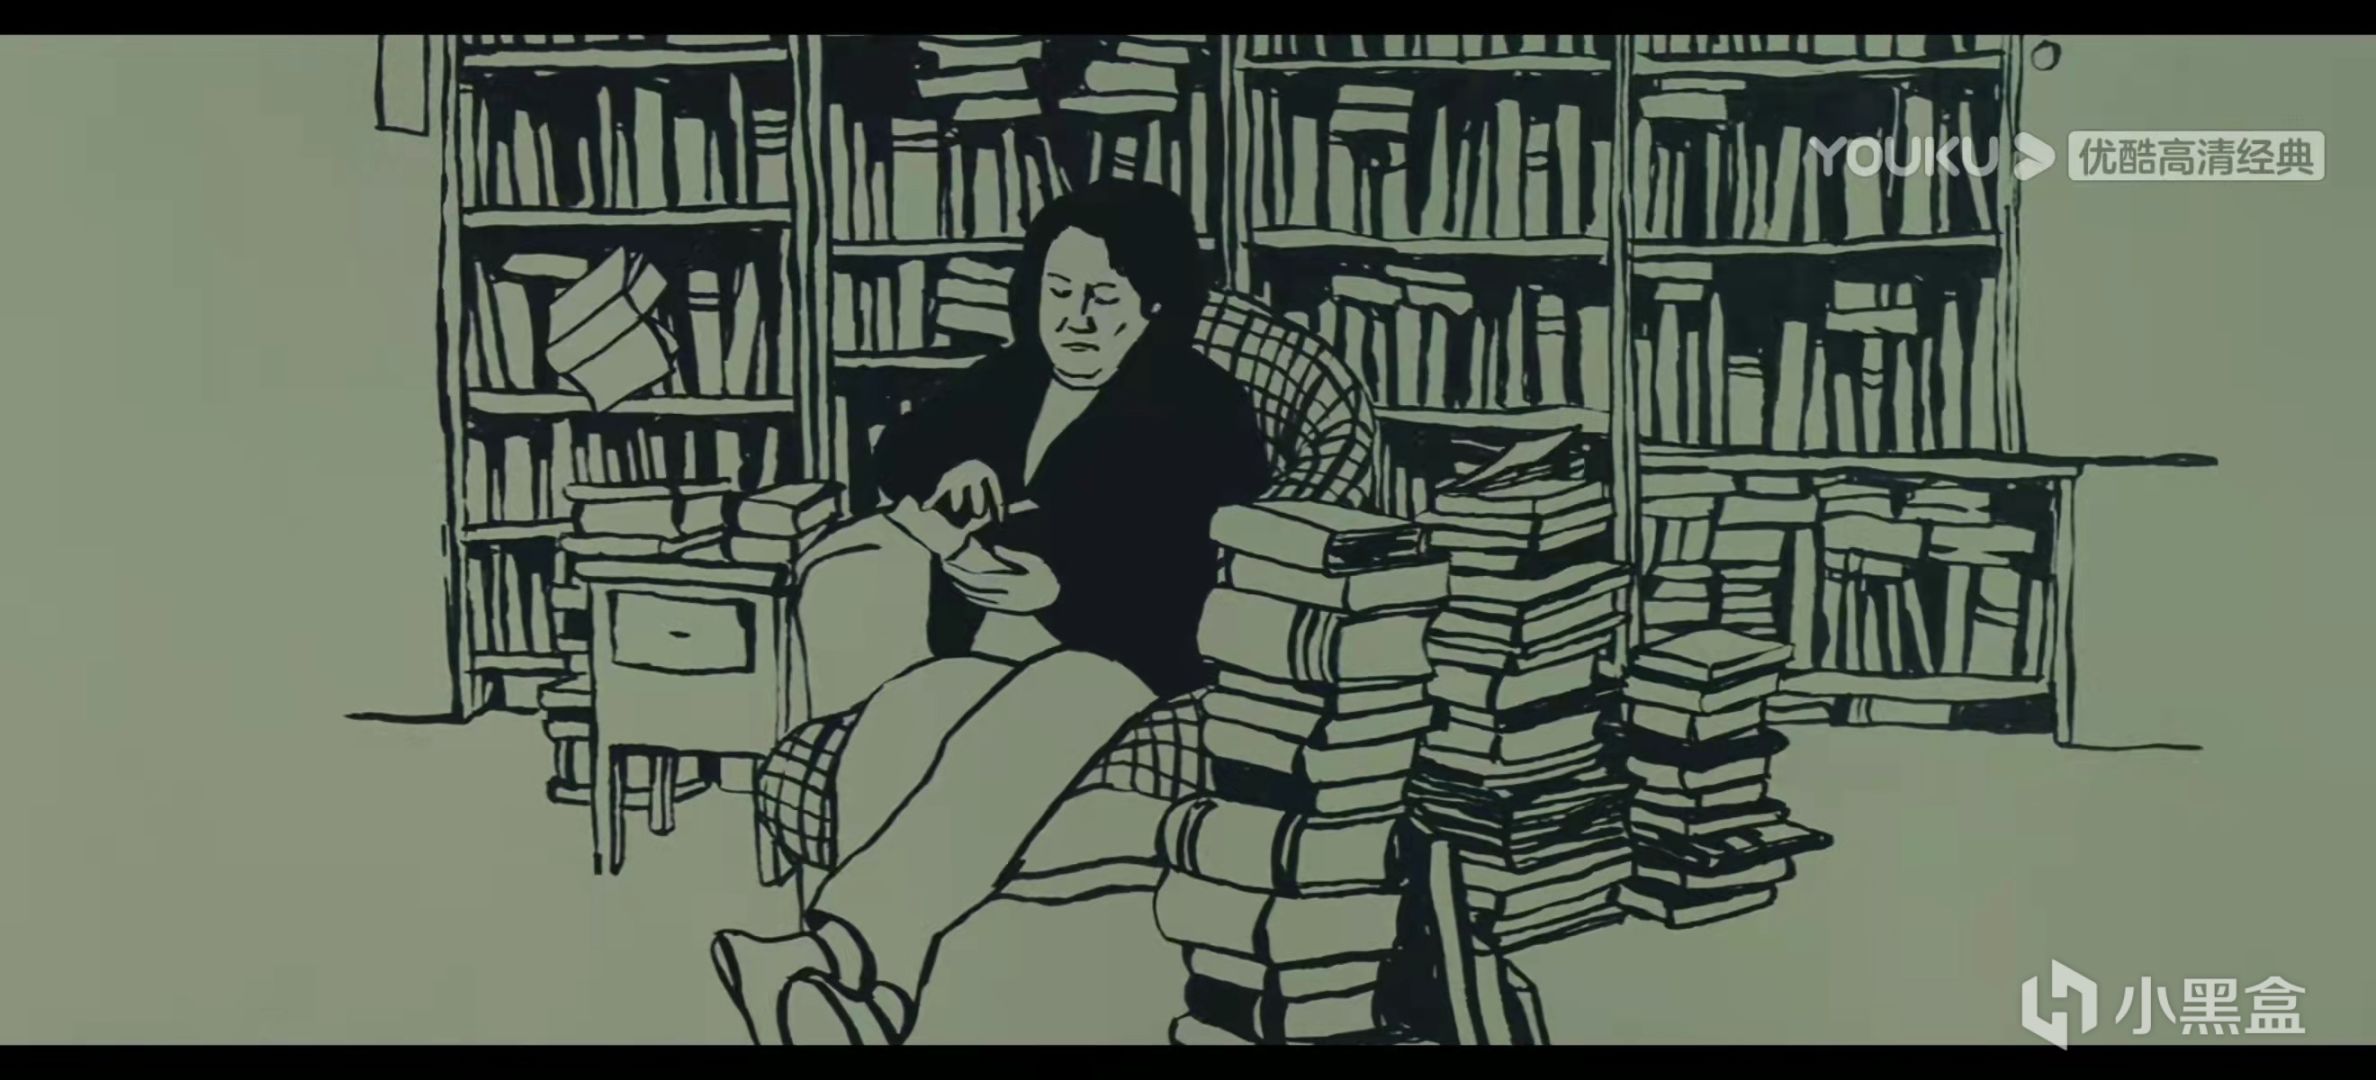 【影视动漫】刺猬少女的死亡倒计时计划——电影《刺猬的优雅》中的帕洛玛视角-第38张